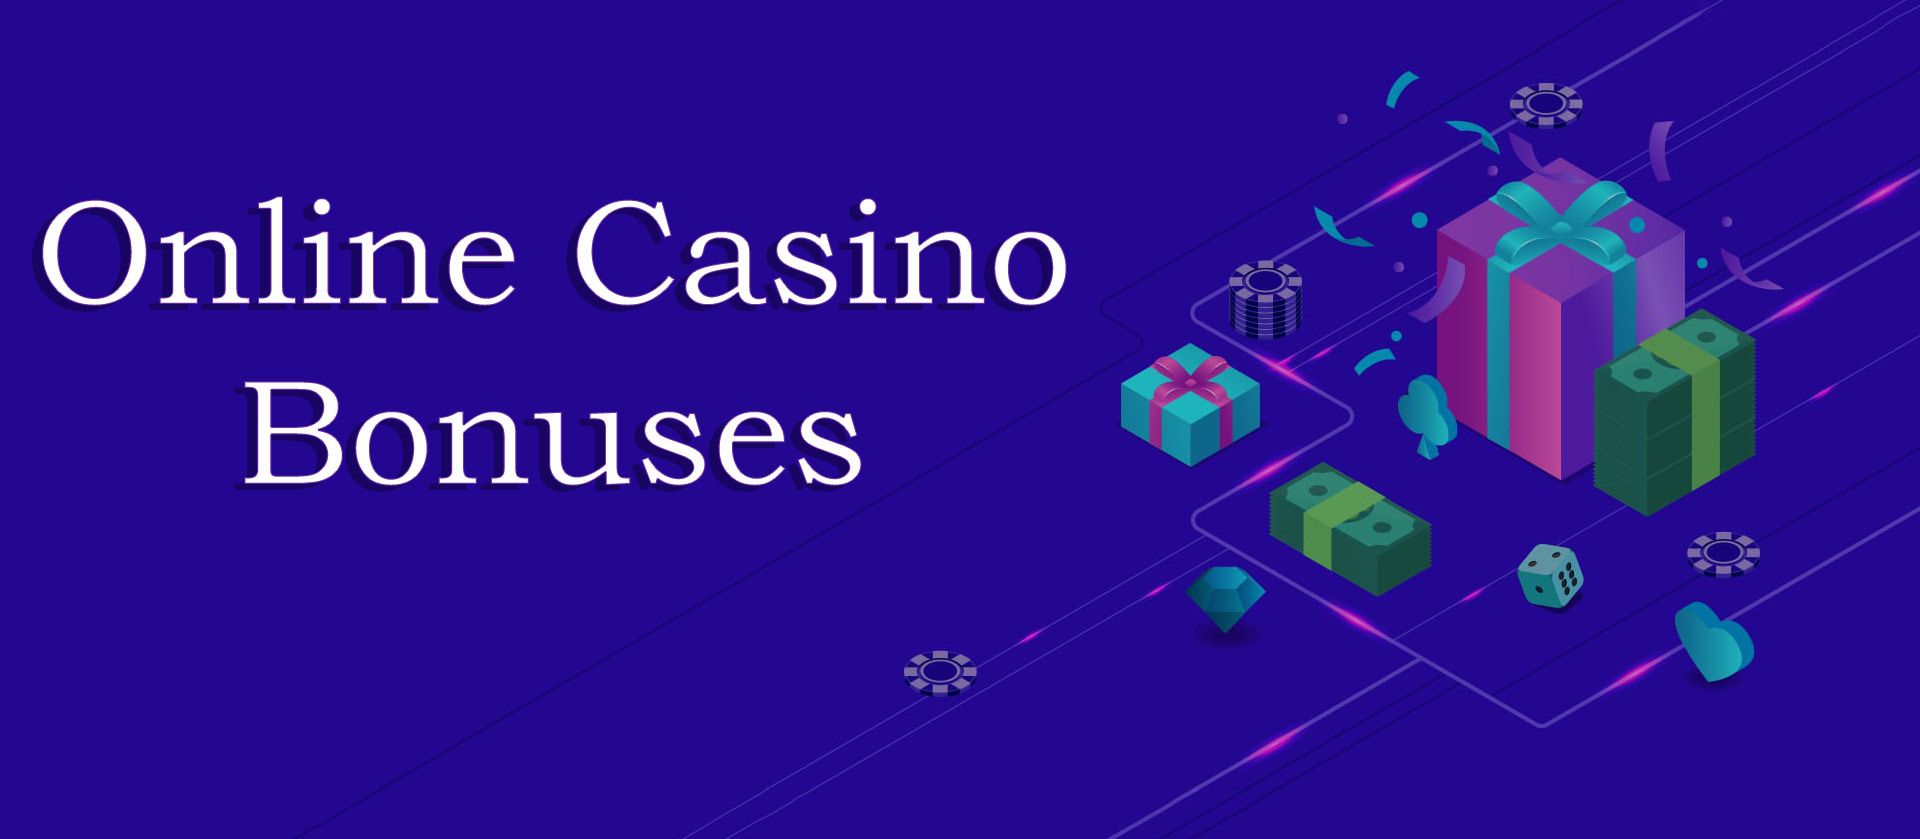 Casino bonuses in Australian casino.